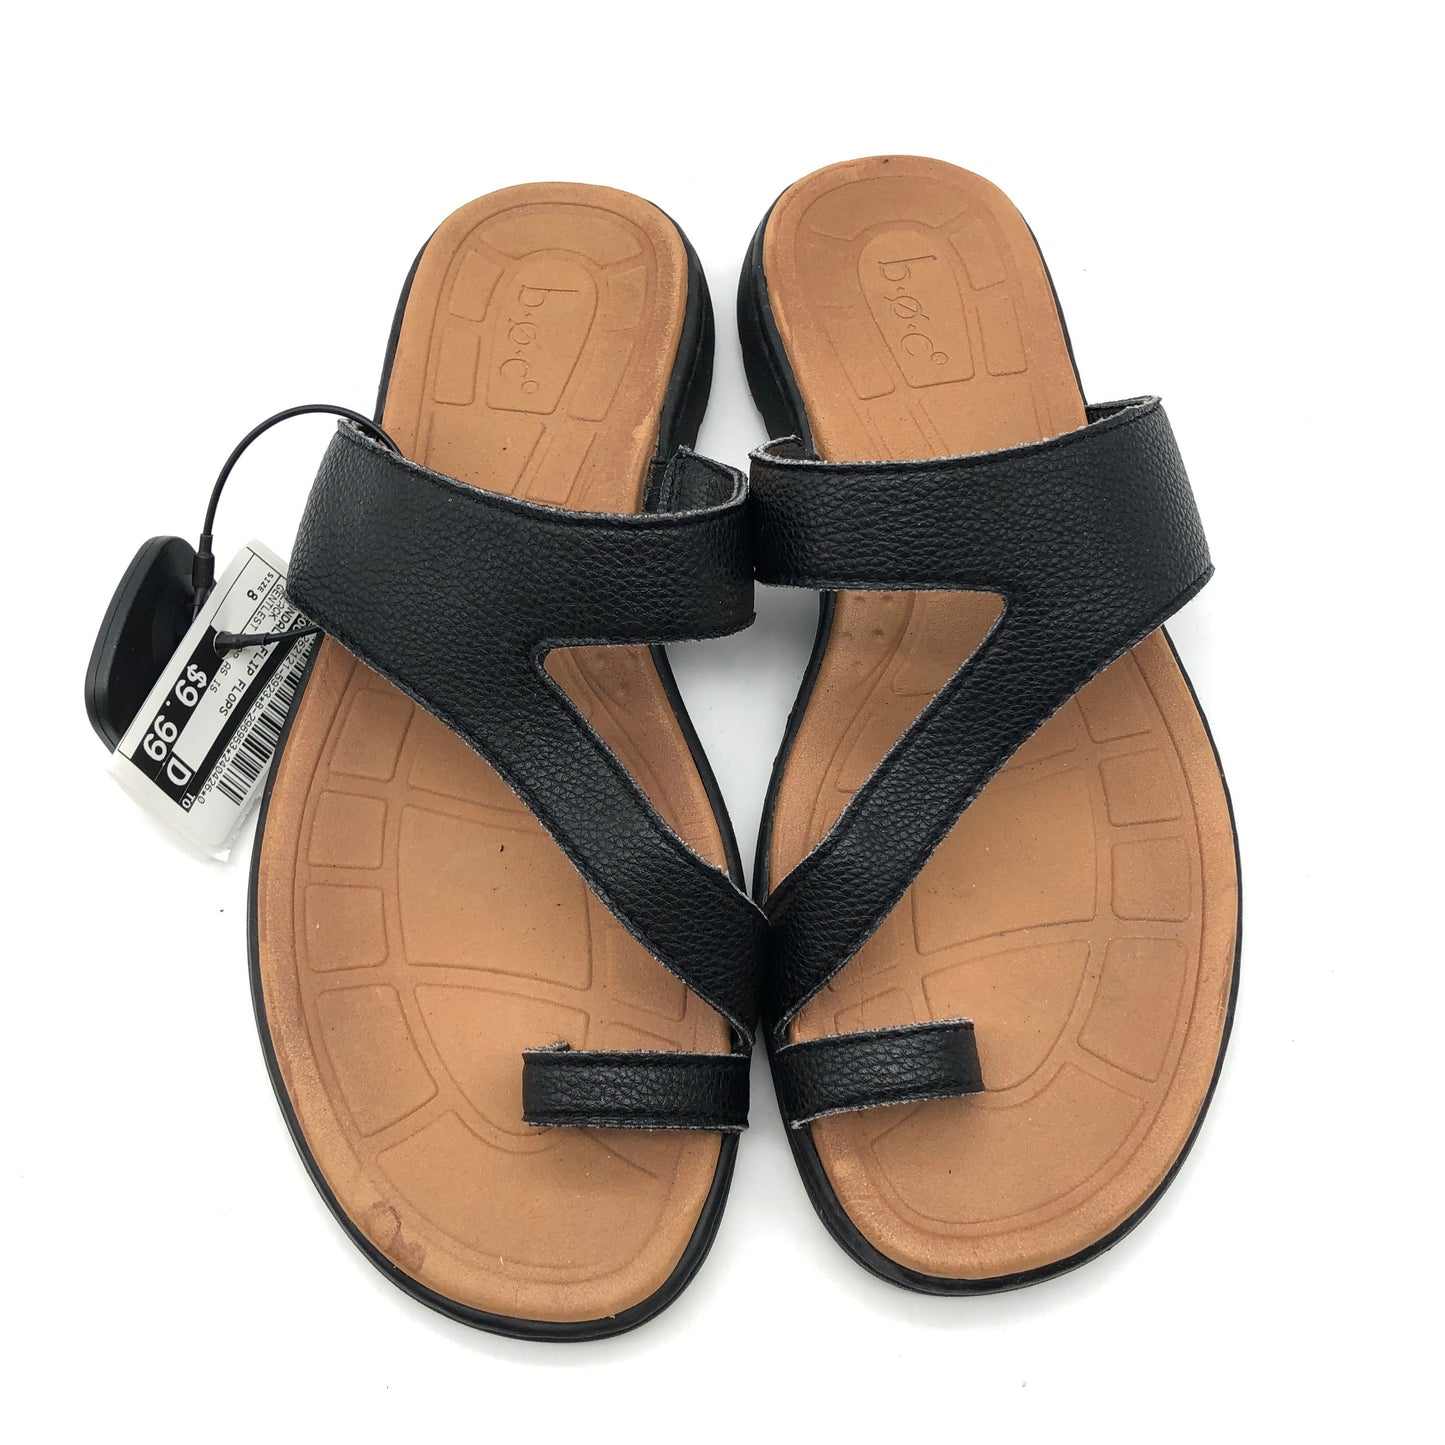 Sandals Flip Flops By Boc  Size: 8